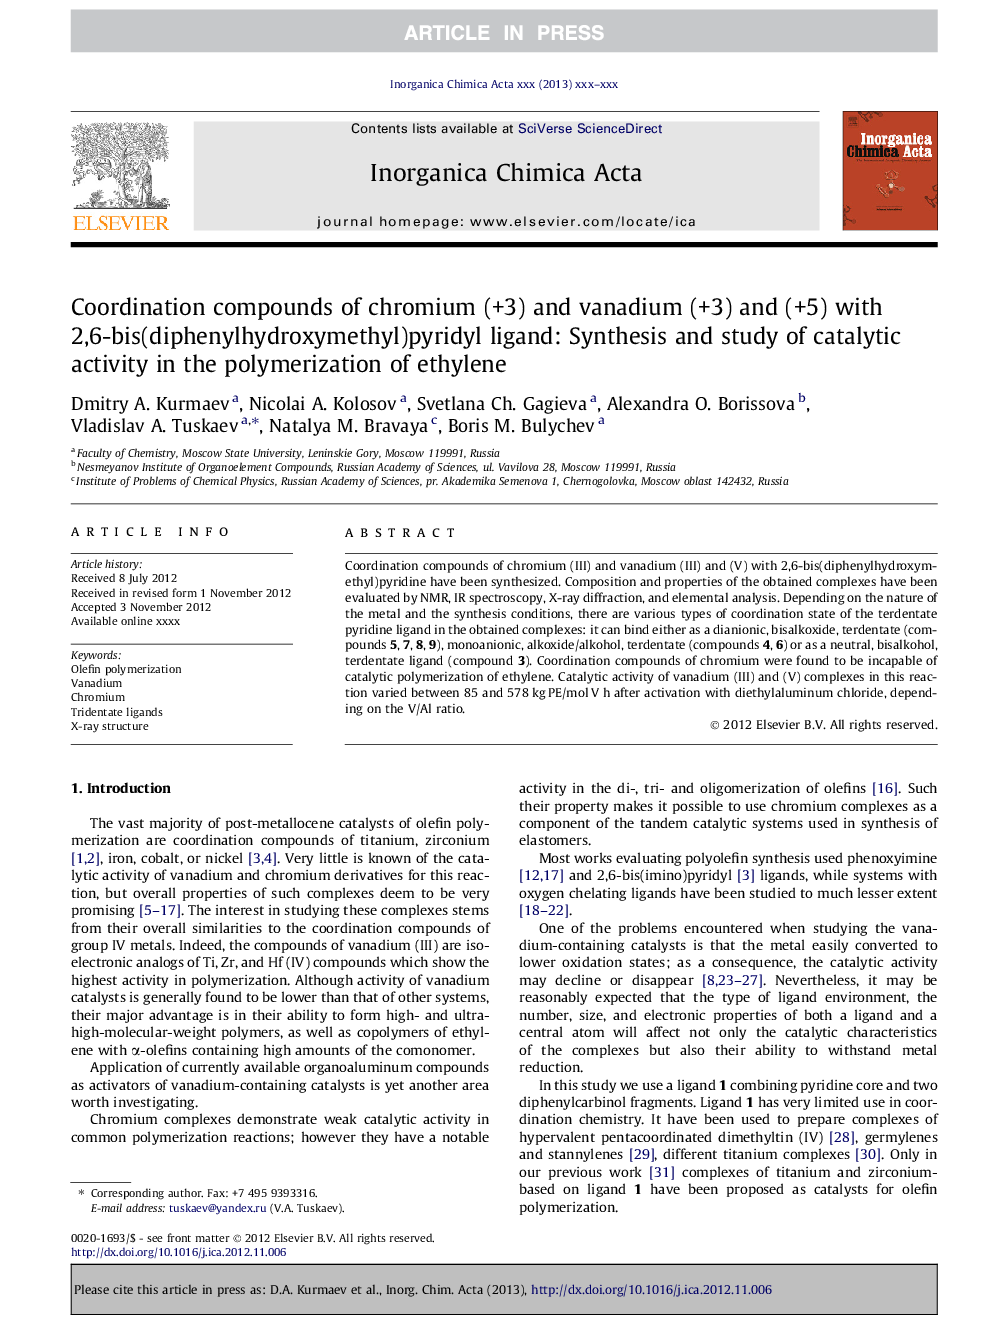 ترکیبات ترکیب کروم (+3) و وانادیوم (+3) و (+5) با 2،6-بیست (دیفنیل هیدروکسیمیل) پییریدیل لیگاند: سنتز و مطالعه فعالیت کاتالیزوری در پلیمریزاسیون اتیلن 